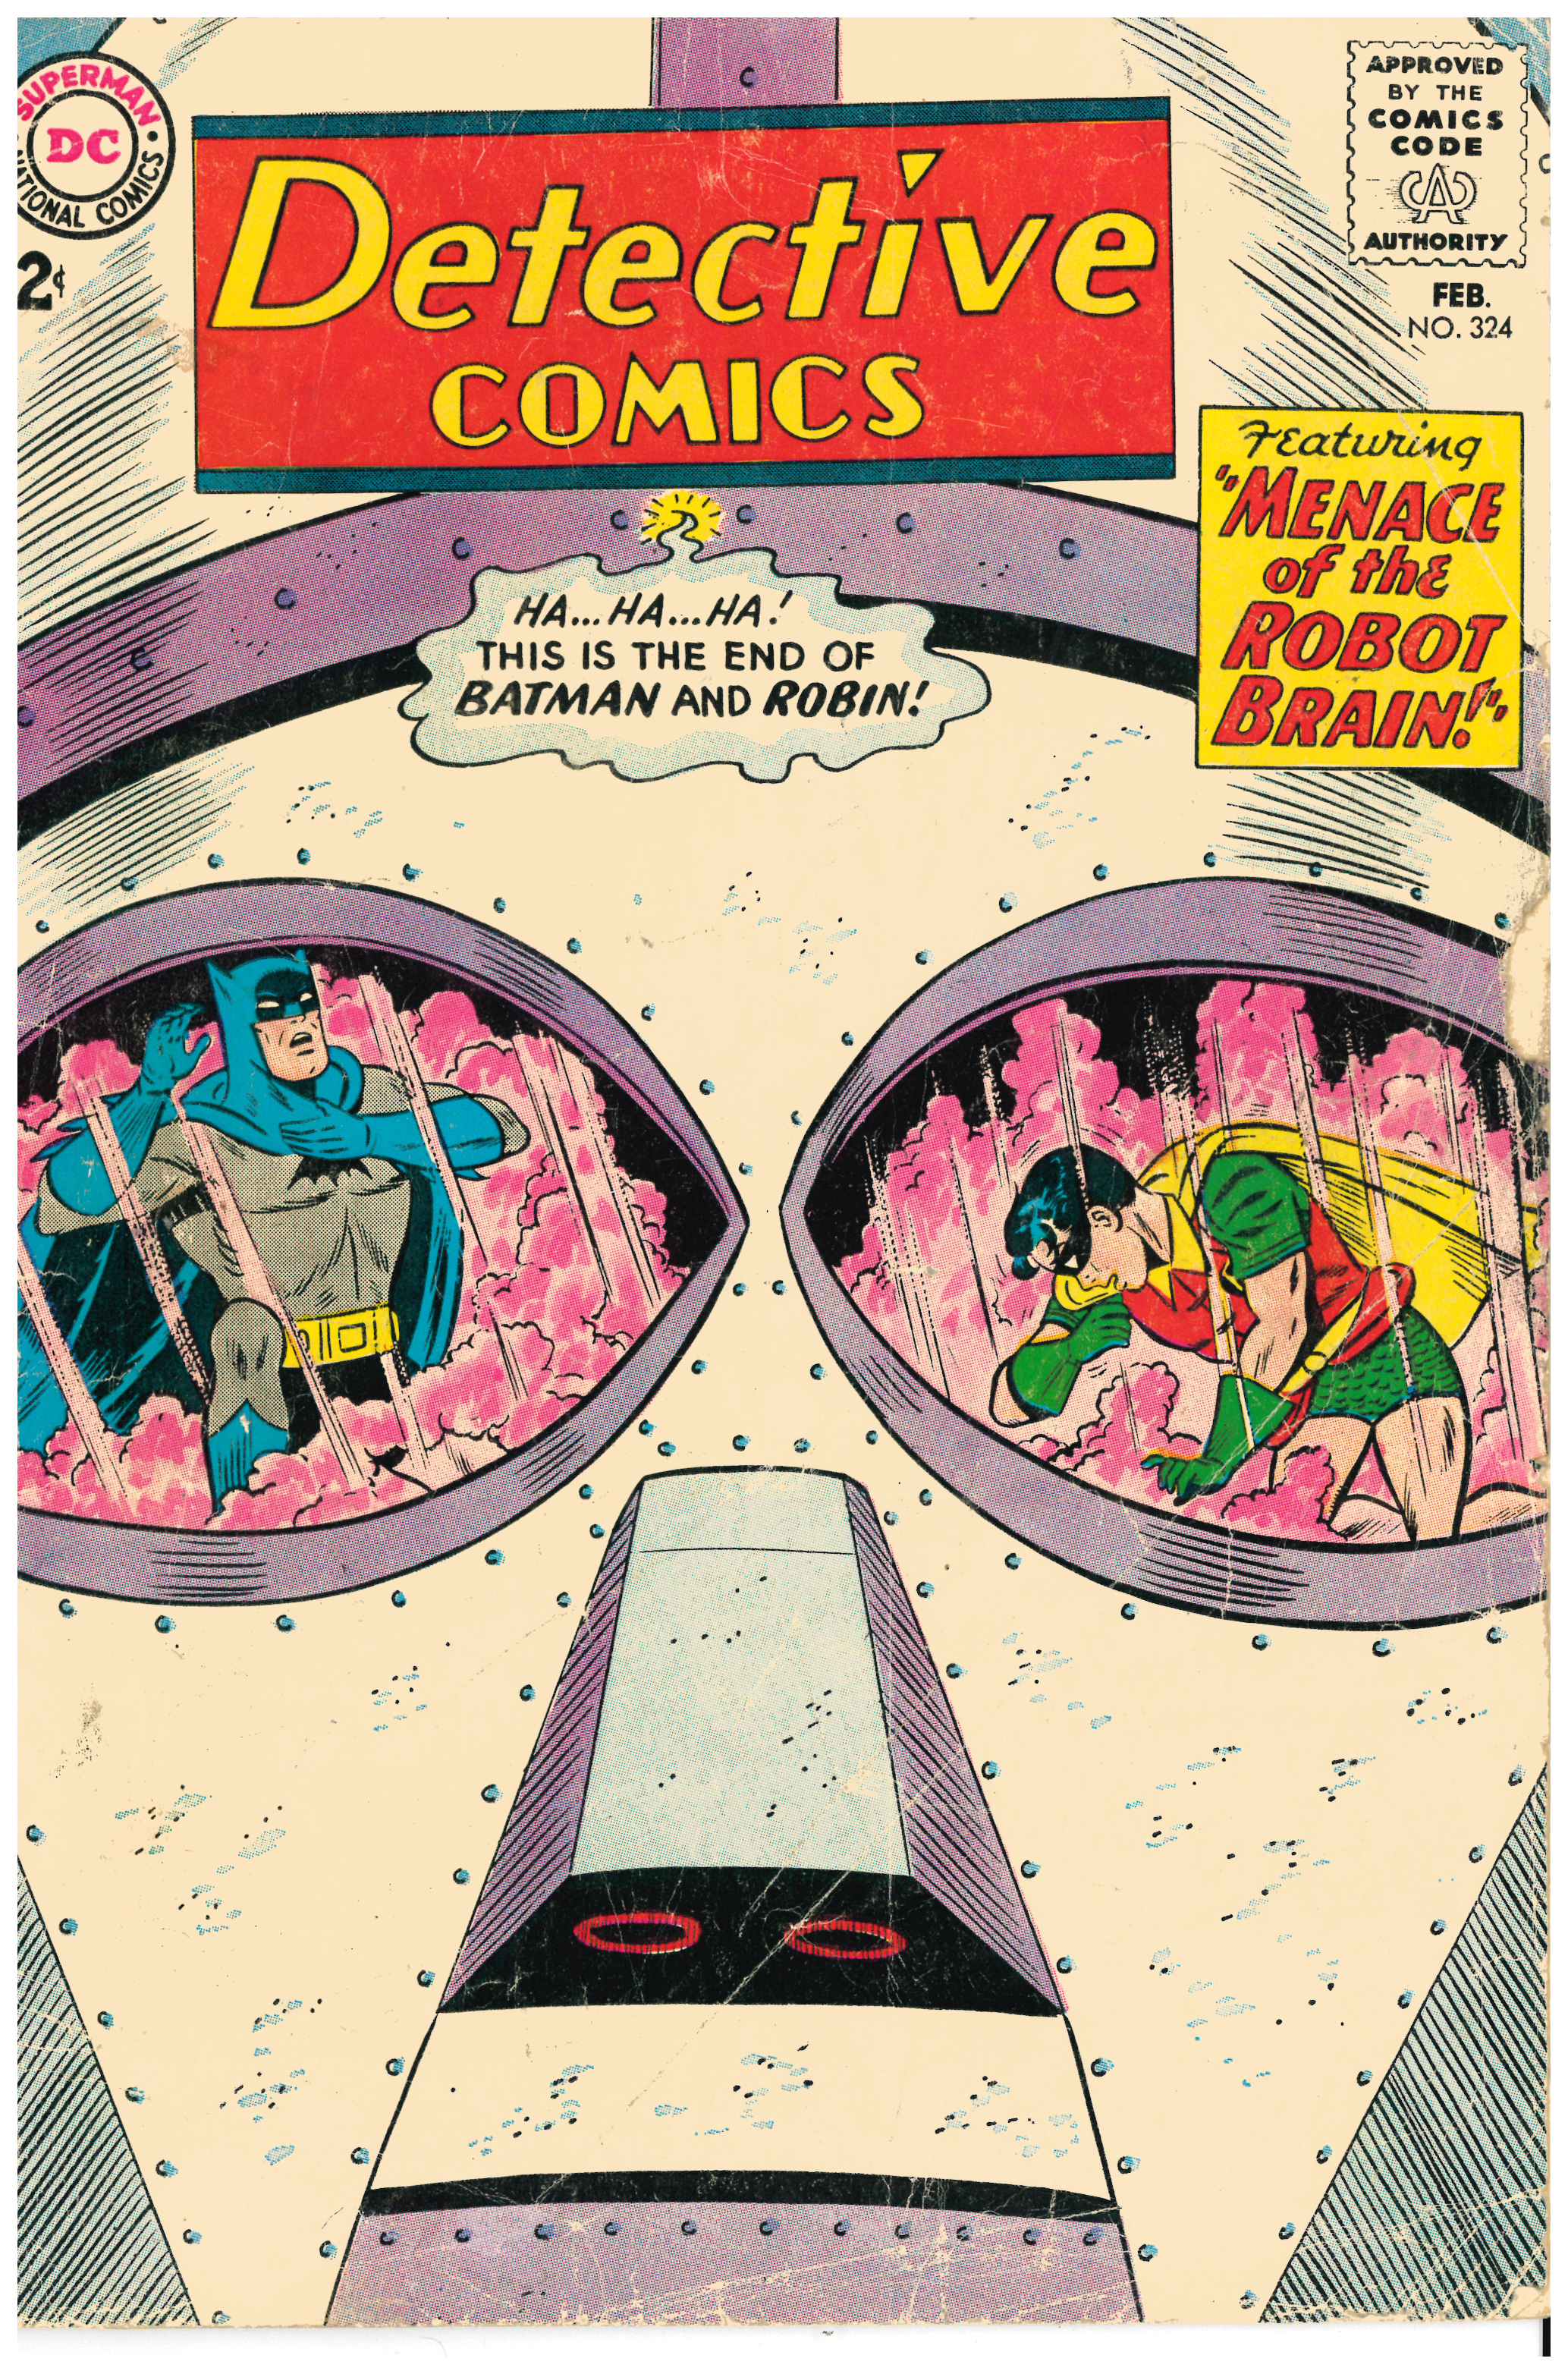 Detective Comics #324